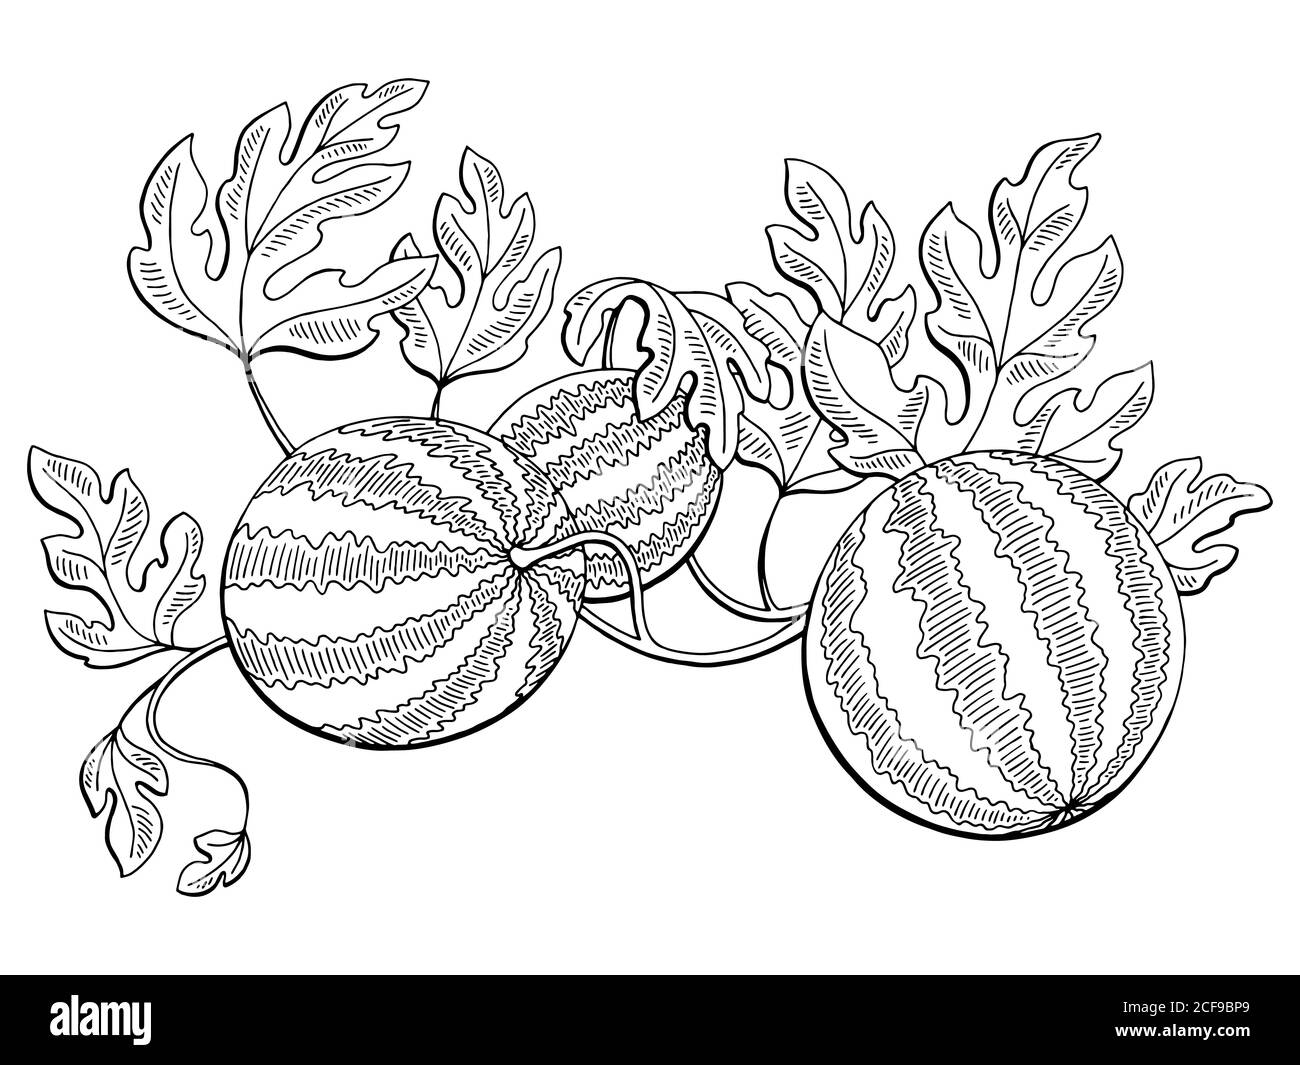 Лист арбуза раскраска